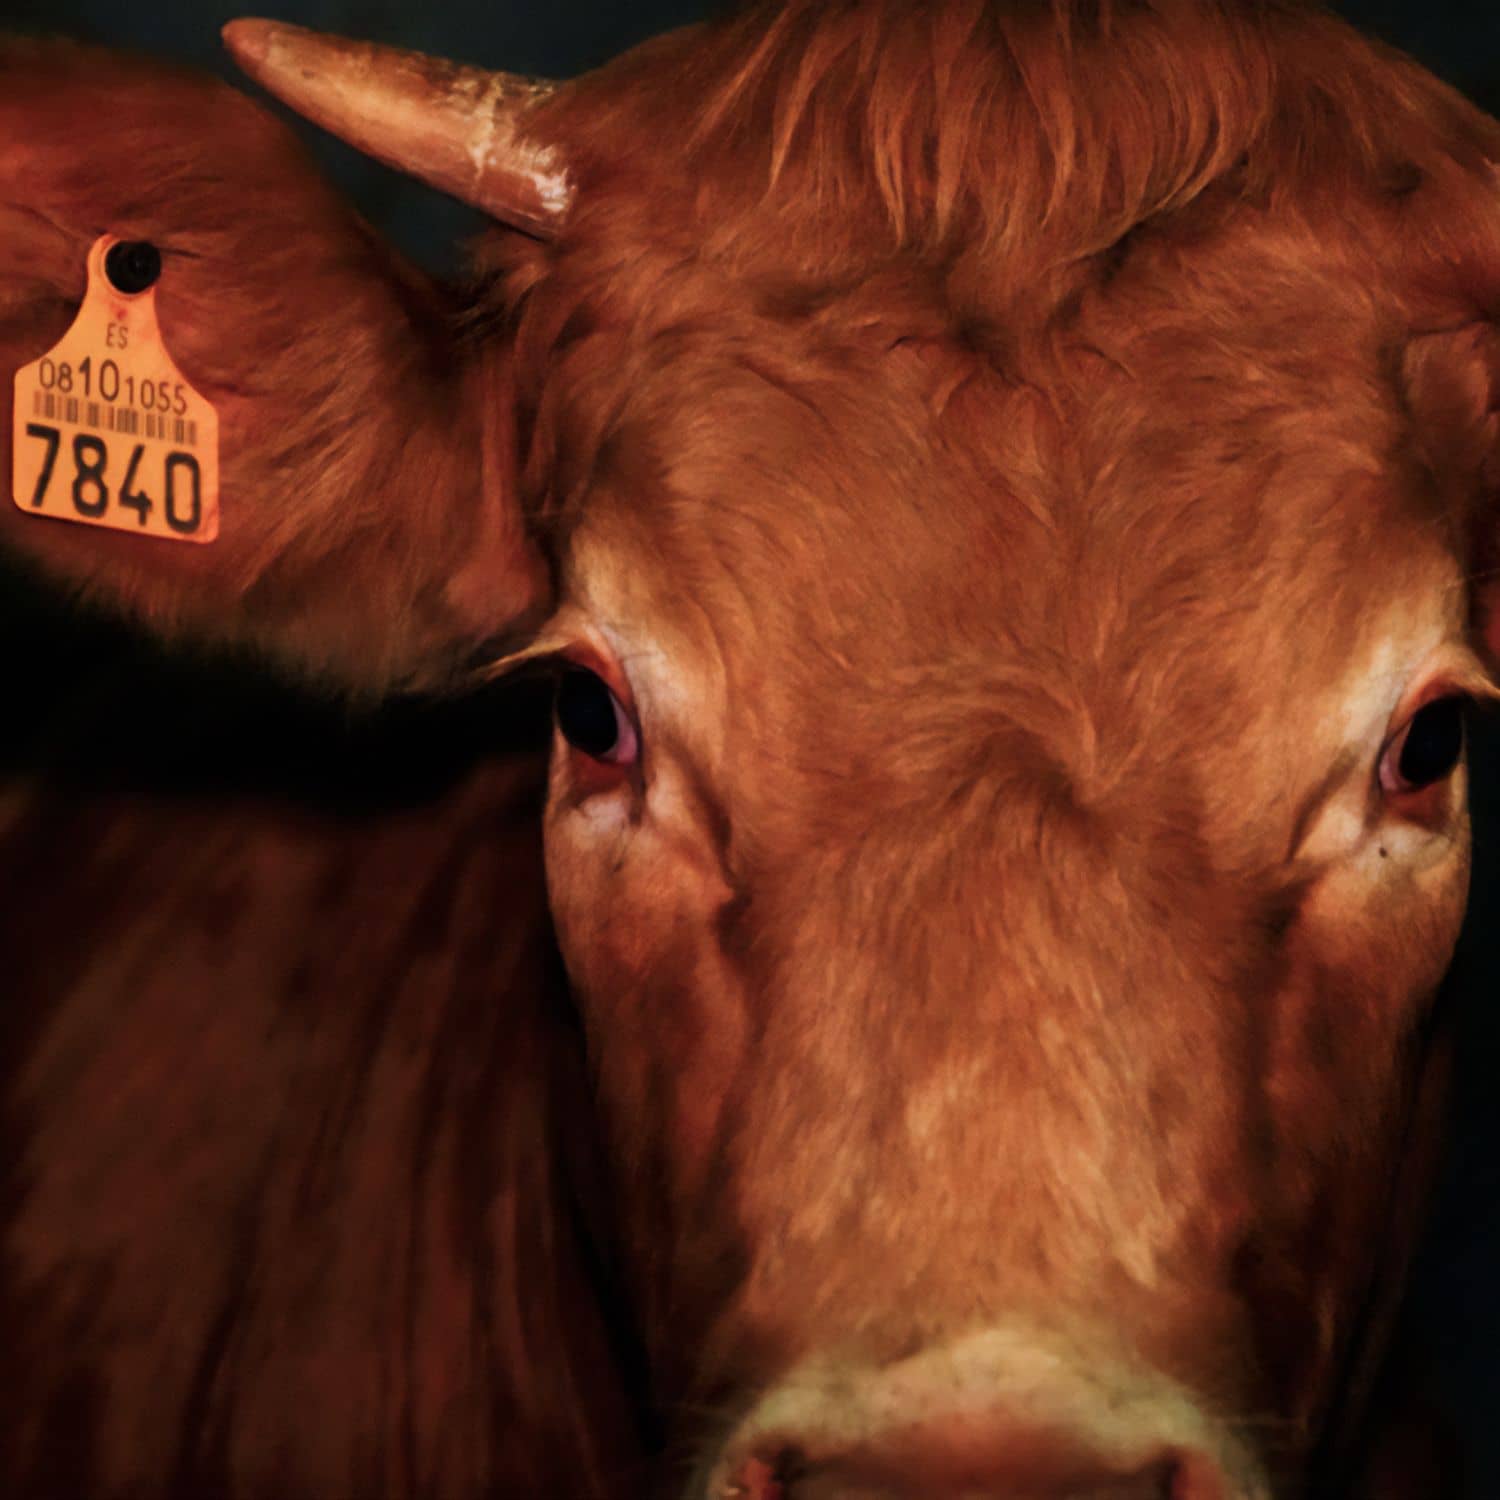 Imagen de la vaca 7840, que fue exportada viva de España y degollada en un matadero halal en Líbano.